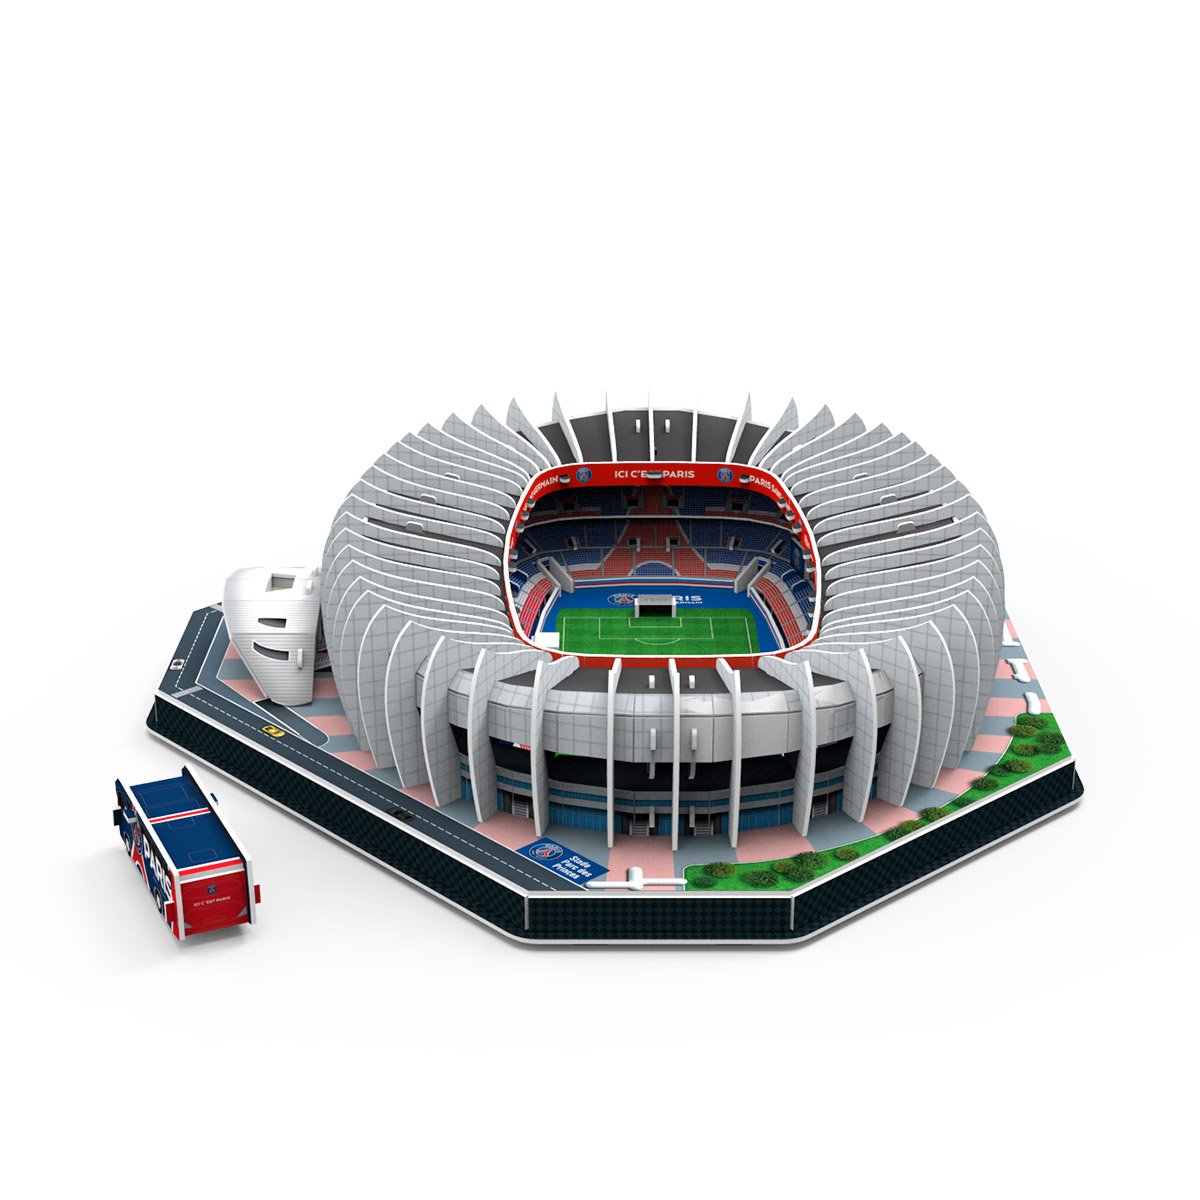 Maquette 3D en Métal - modélisme - stade de football